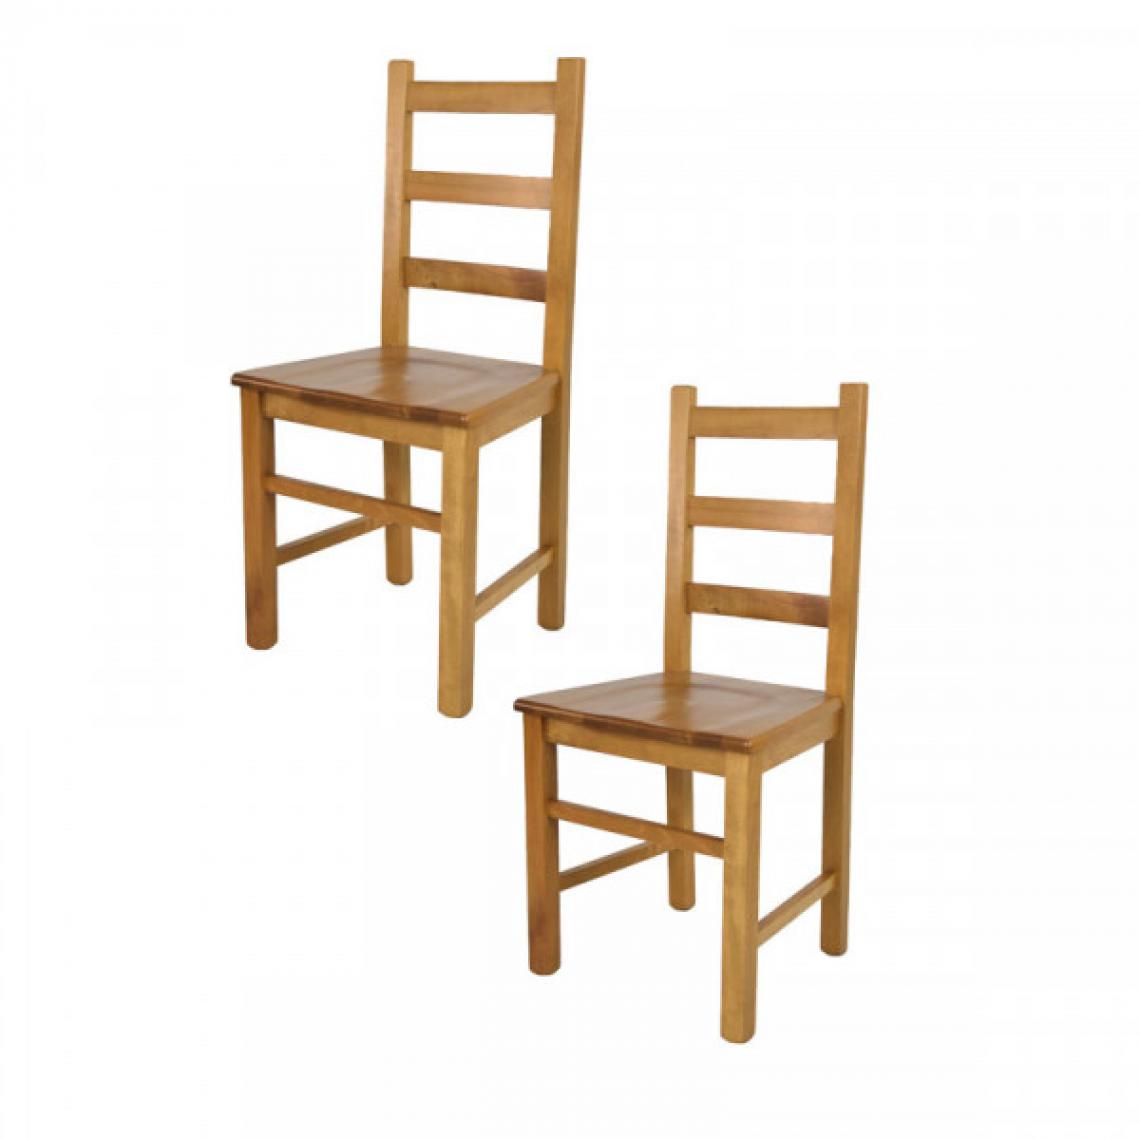 Dansmamaison - Lot de 2 chaises rustiques Chêne n°2 - PISA - L 43 x l 40 x H 97 cm - Chaises